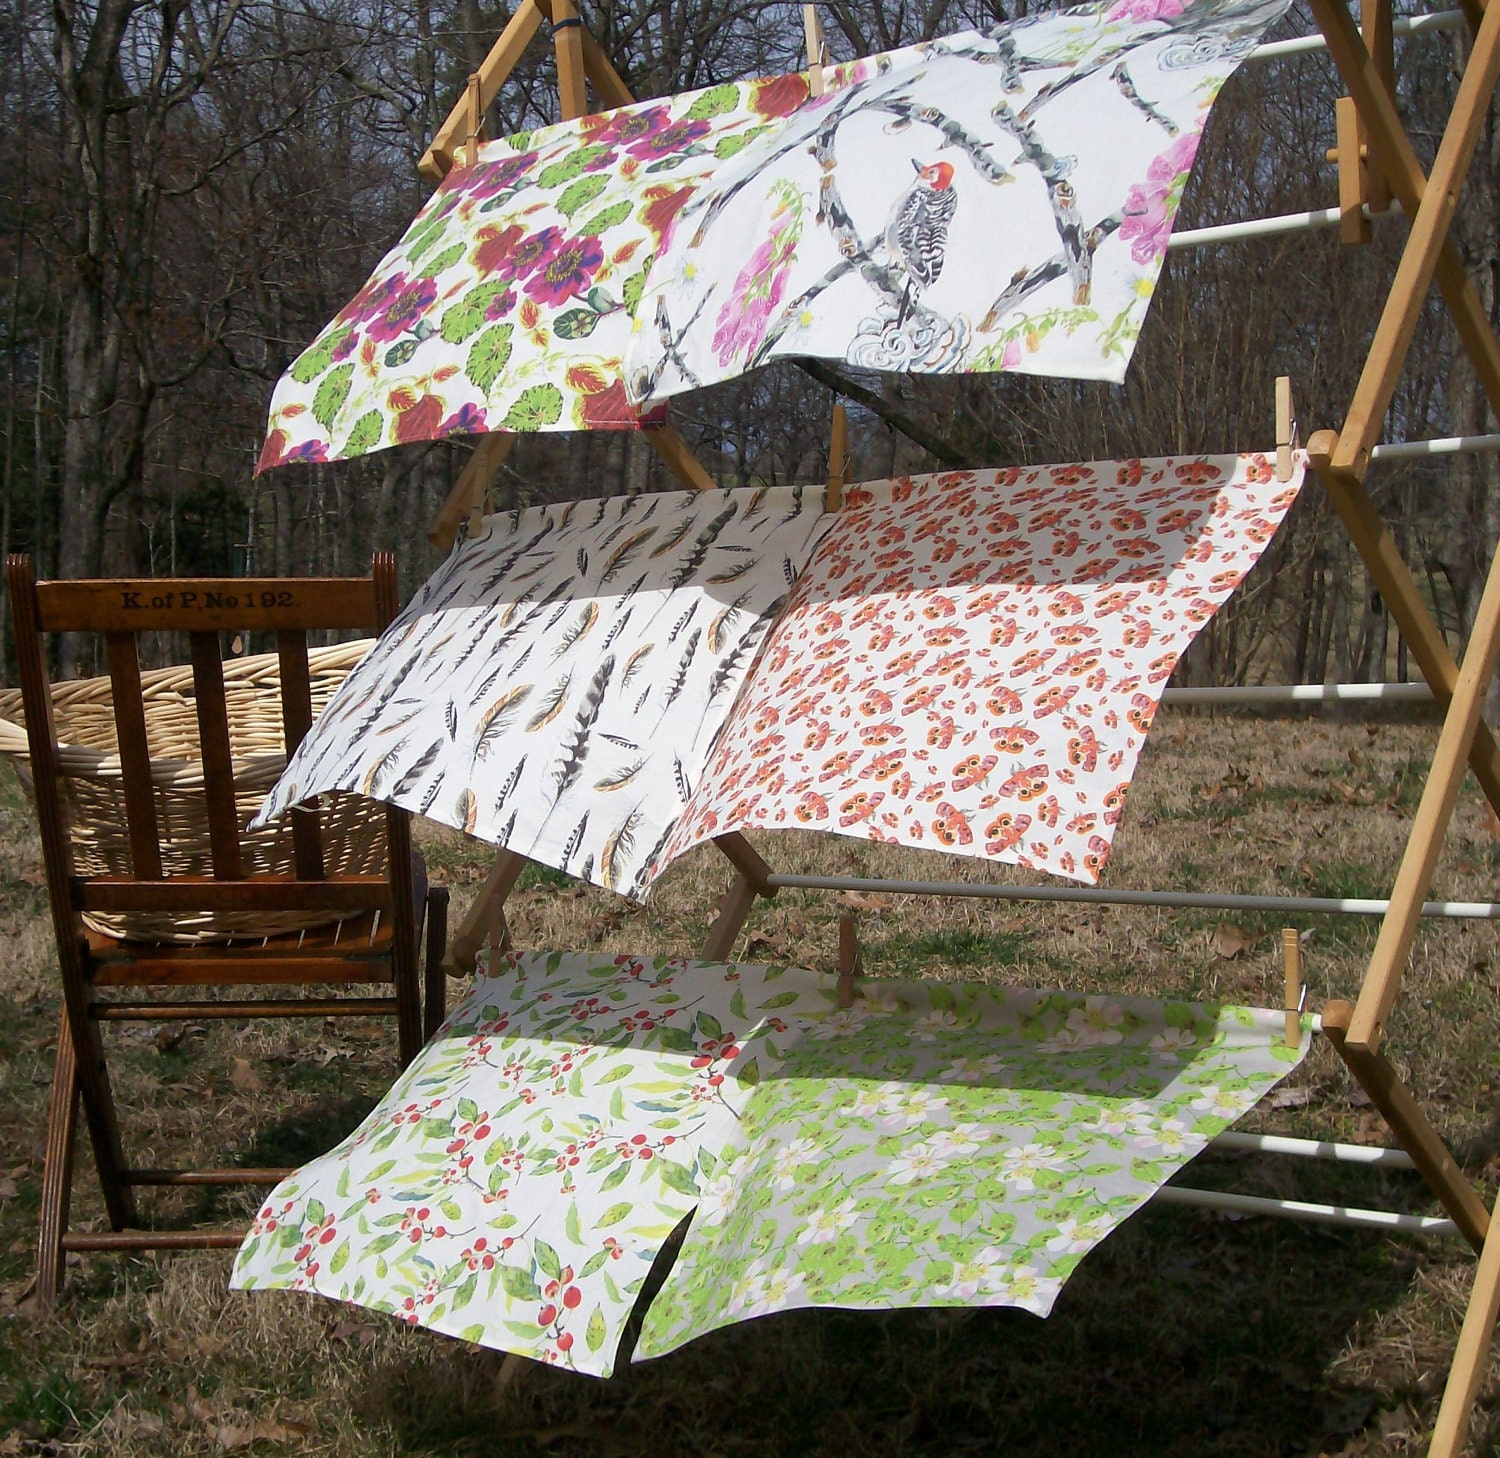 set of six cloth botanical nature napkins made of original fabric